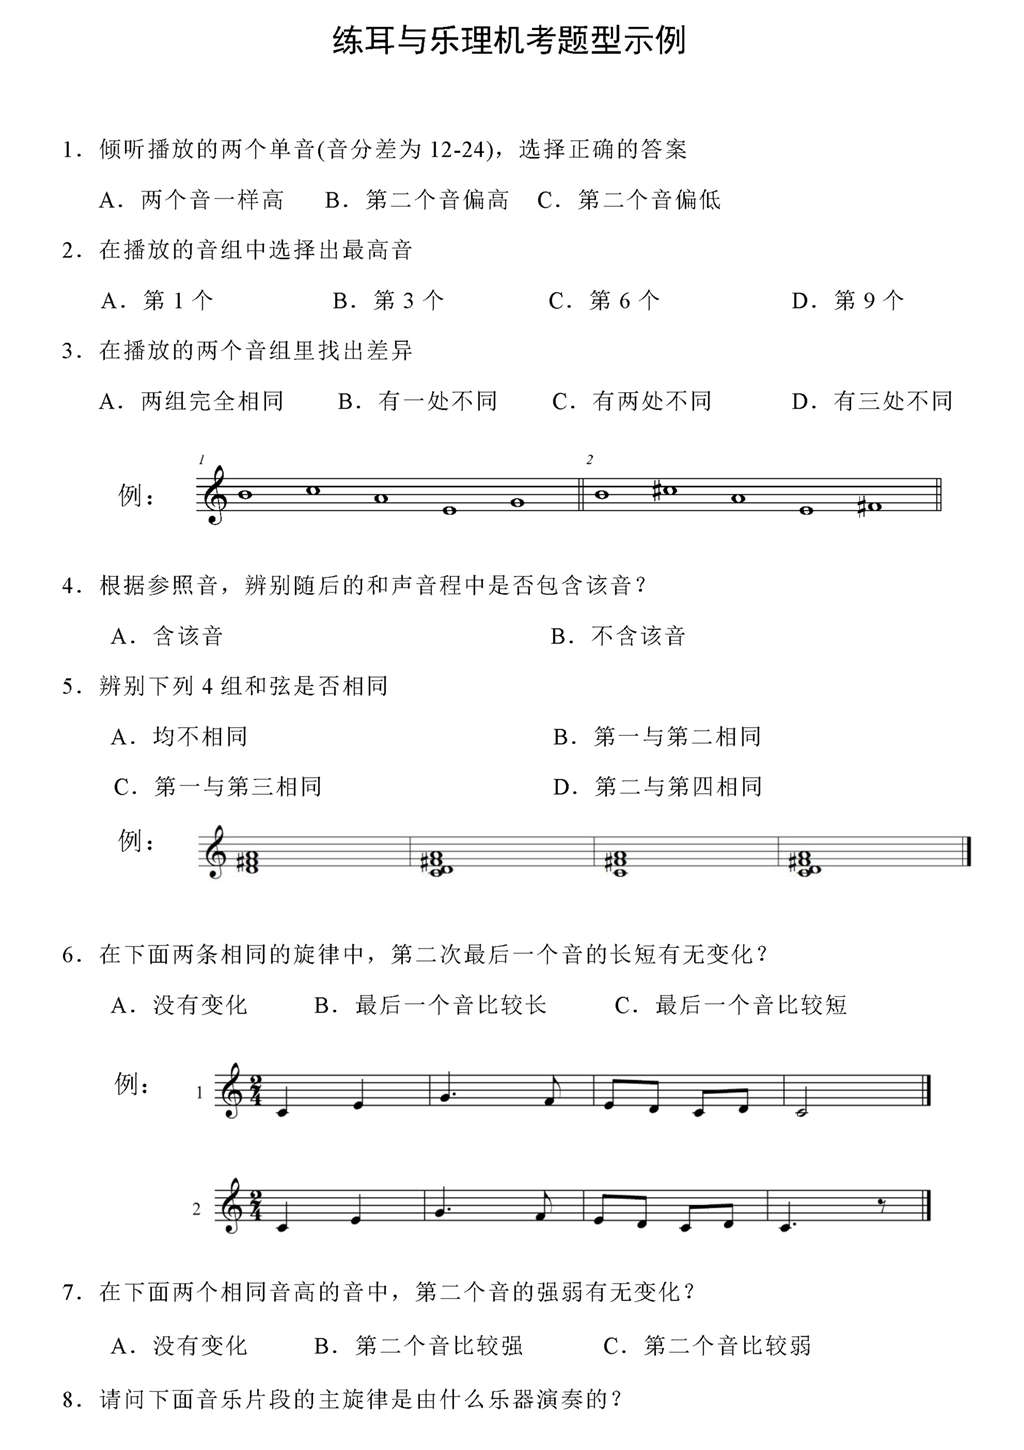 广东省音乐联考练耳与乐理机考题型样卷